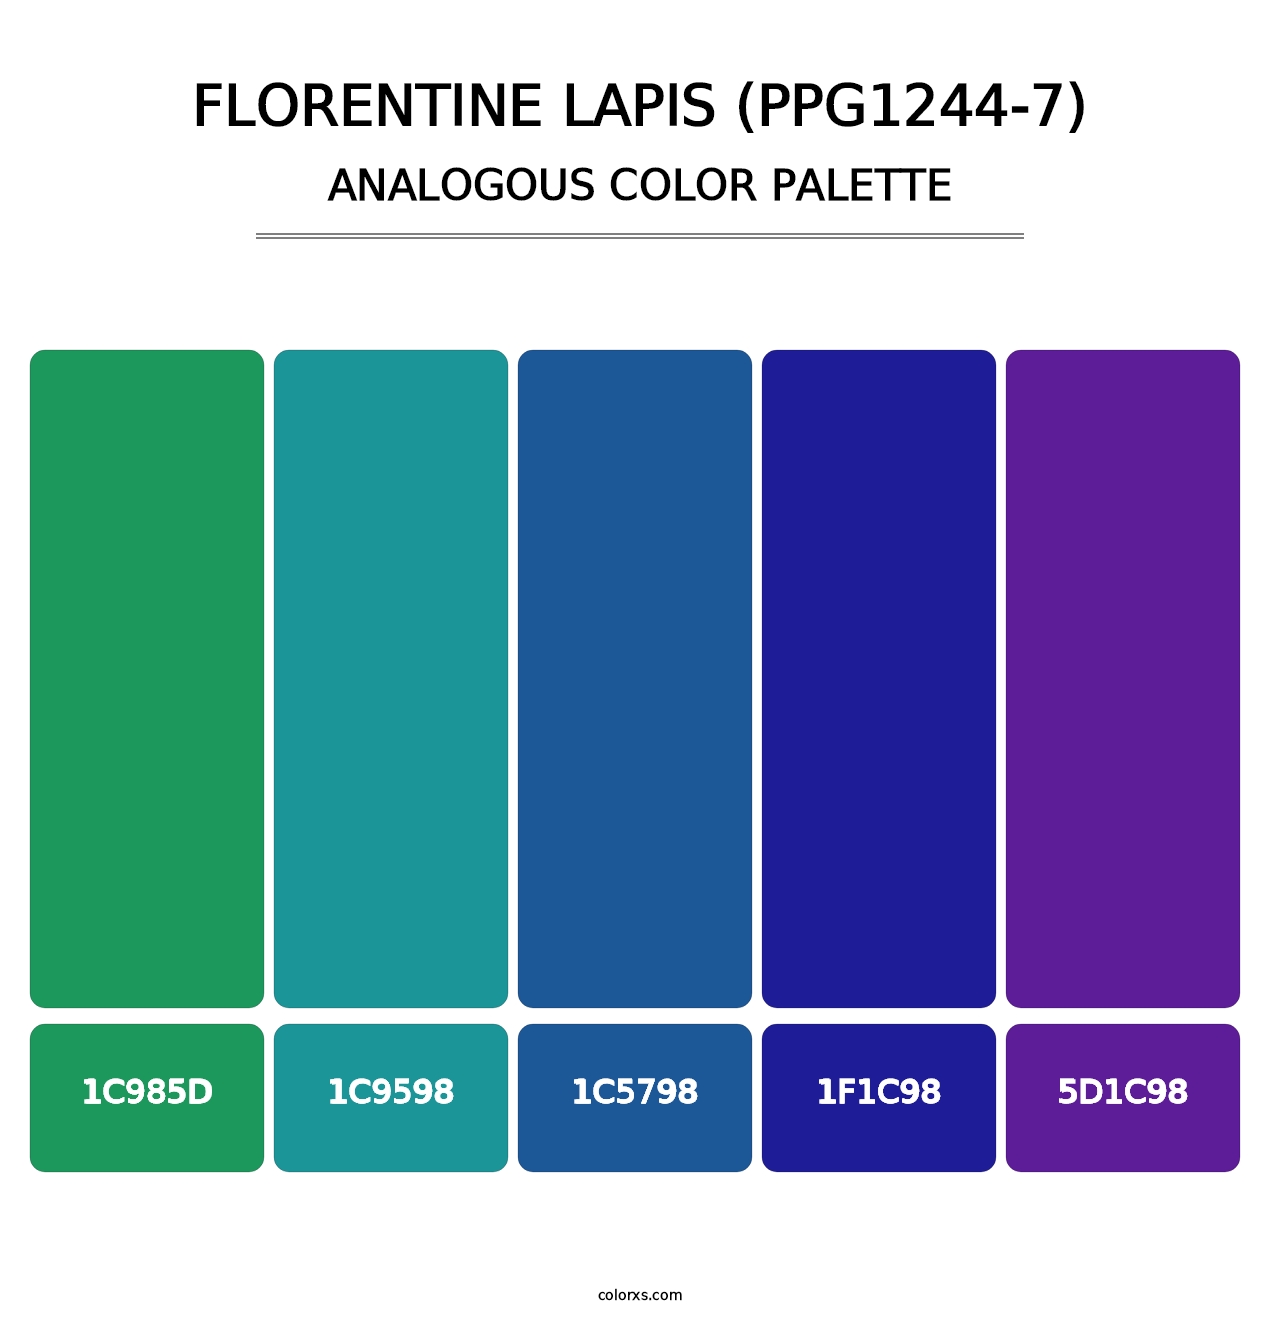 Florentine Lapis (PPG1244-7) - Analogous Color Palette